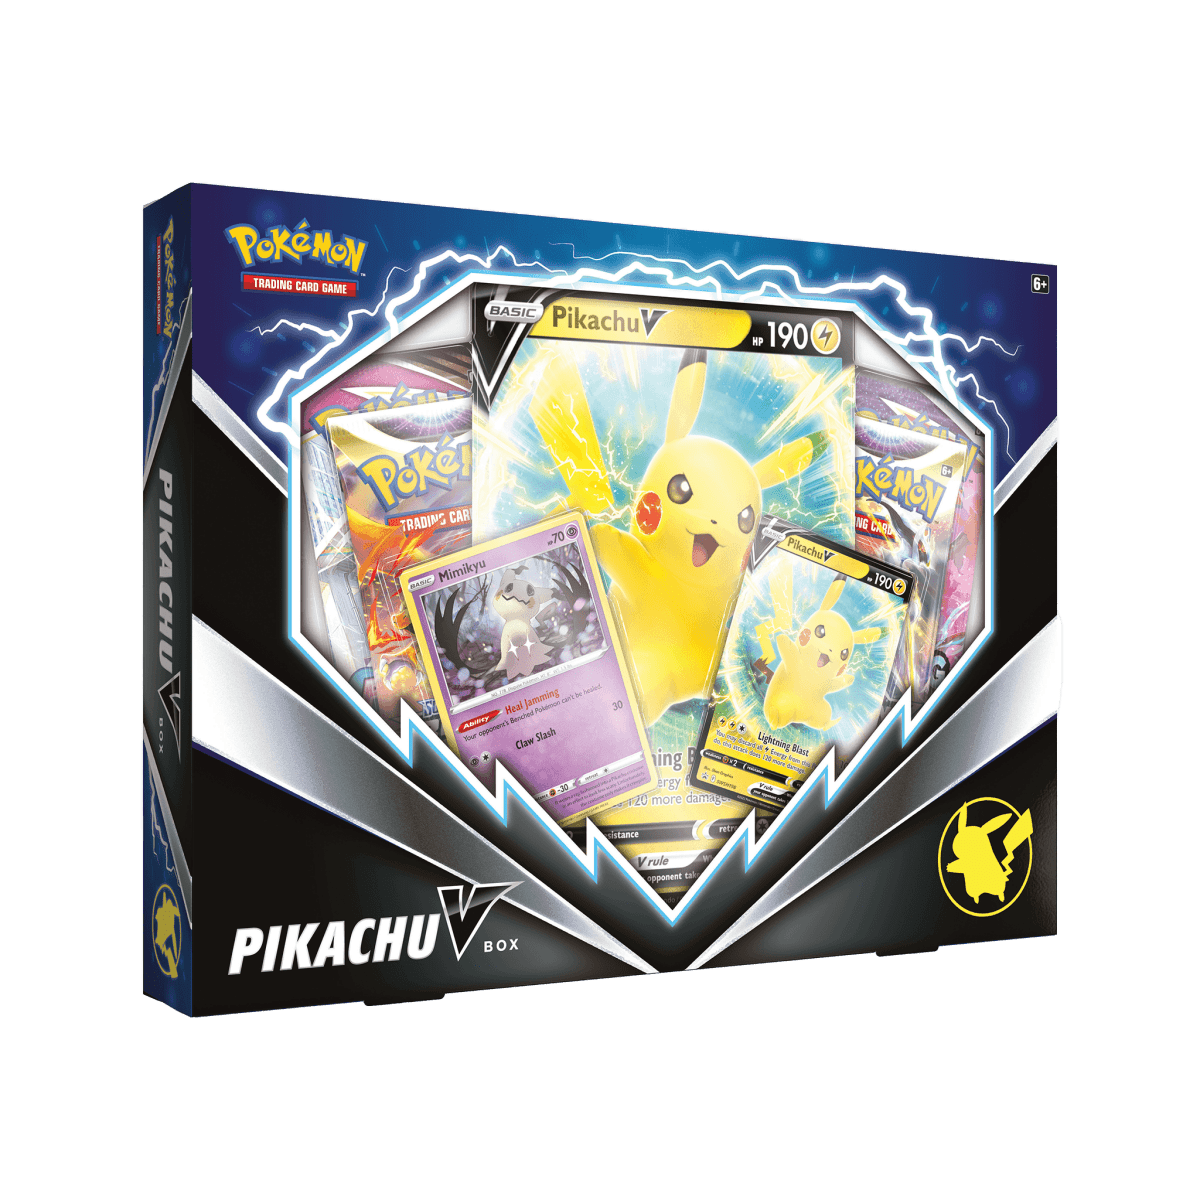 Pokémon TCG - Pikachu V Box - Cardmaniac.ch